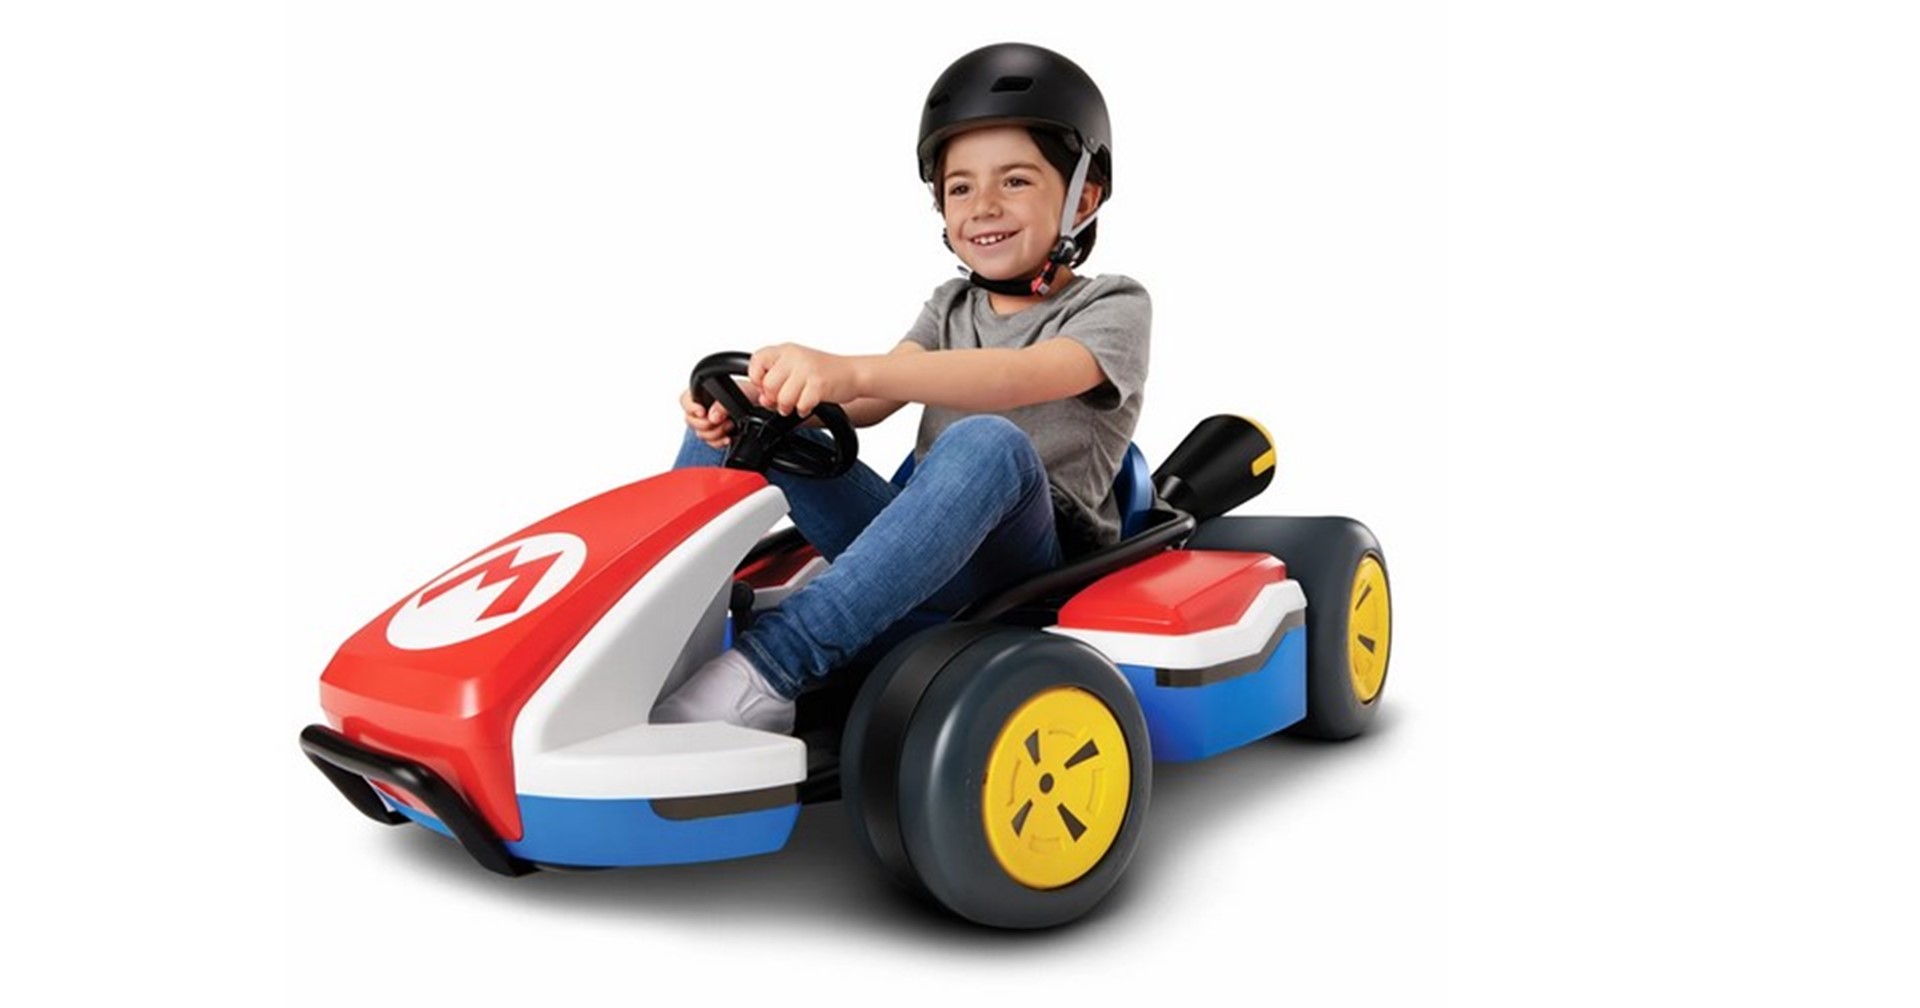 เปิดตัวรถของเล่นจากเกม Mario Kart ที่ขับได้จริง